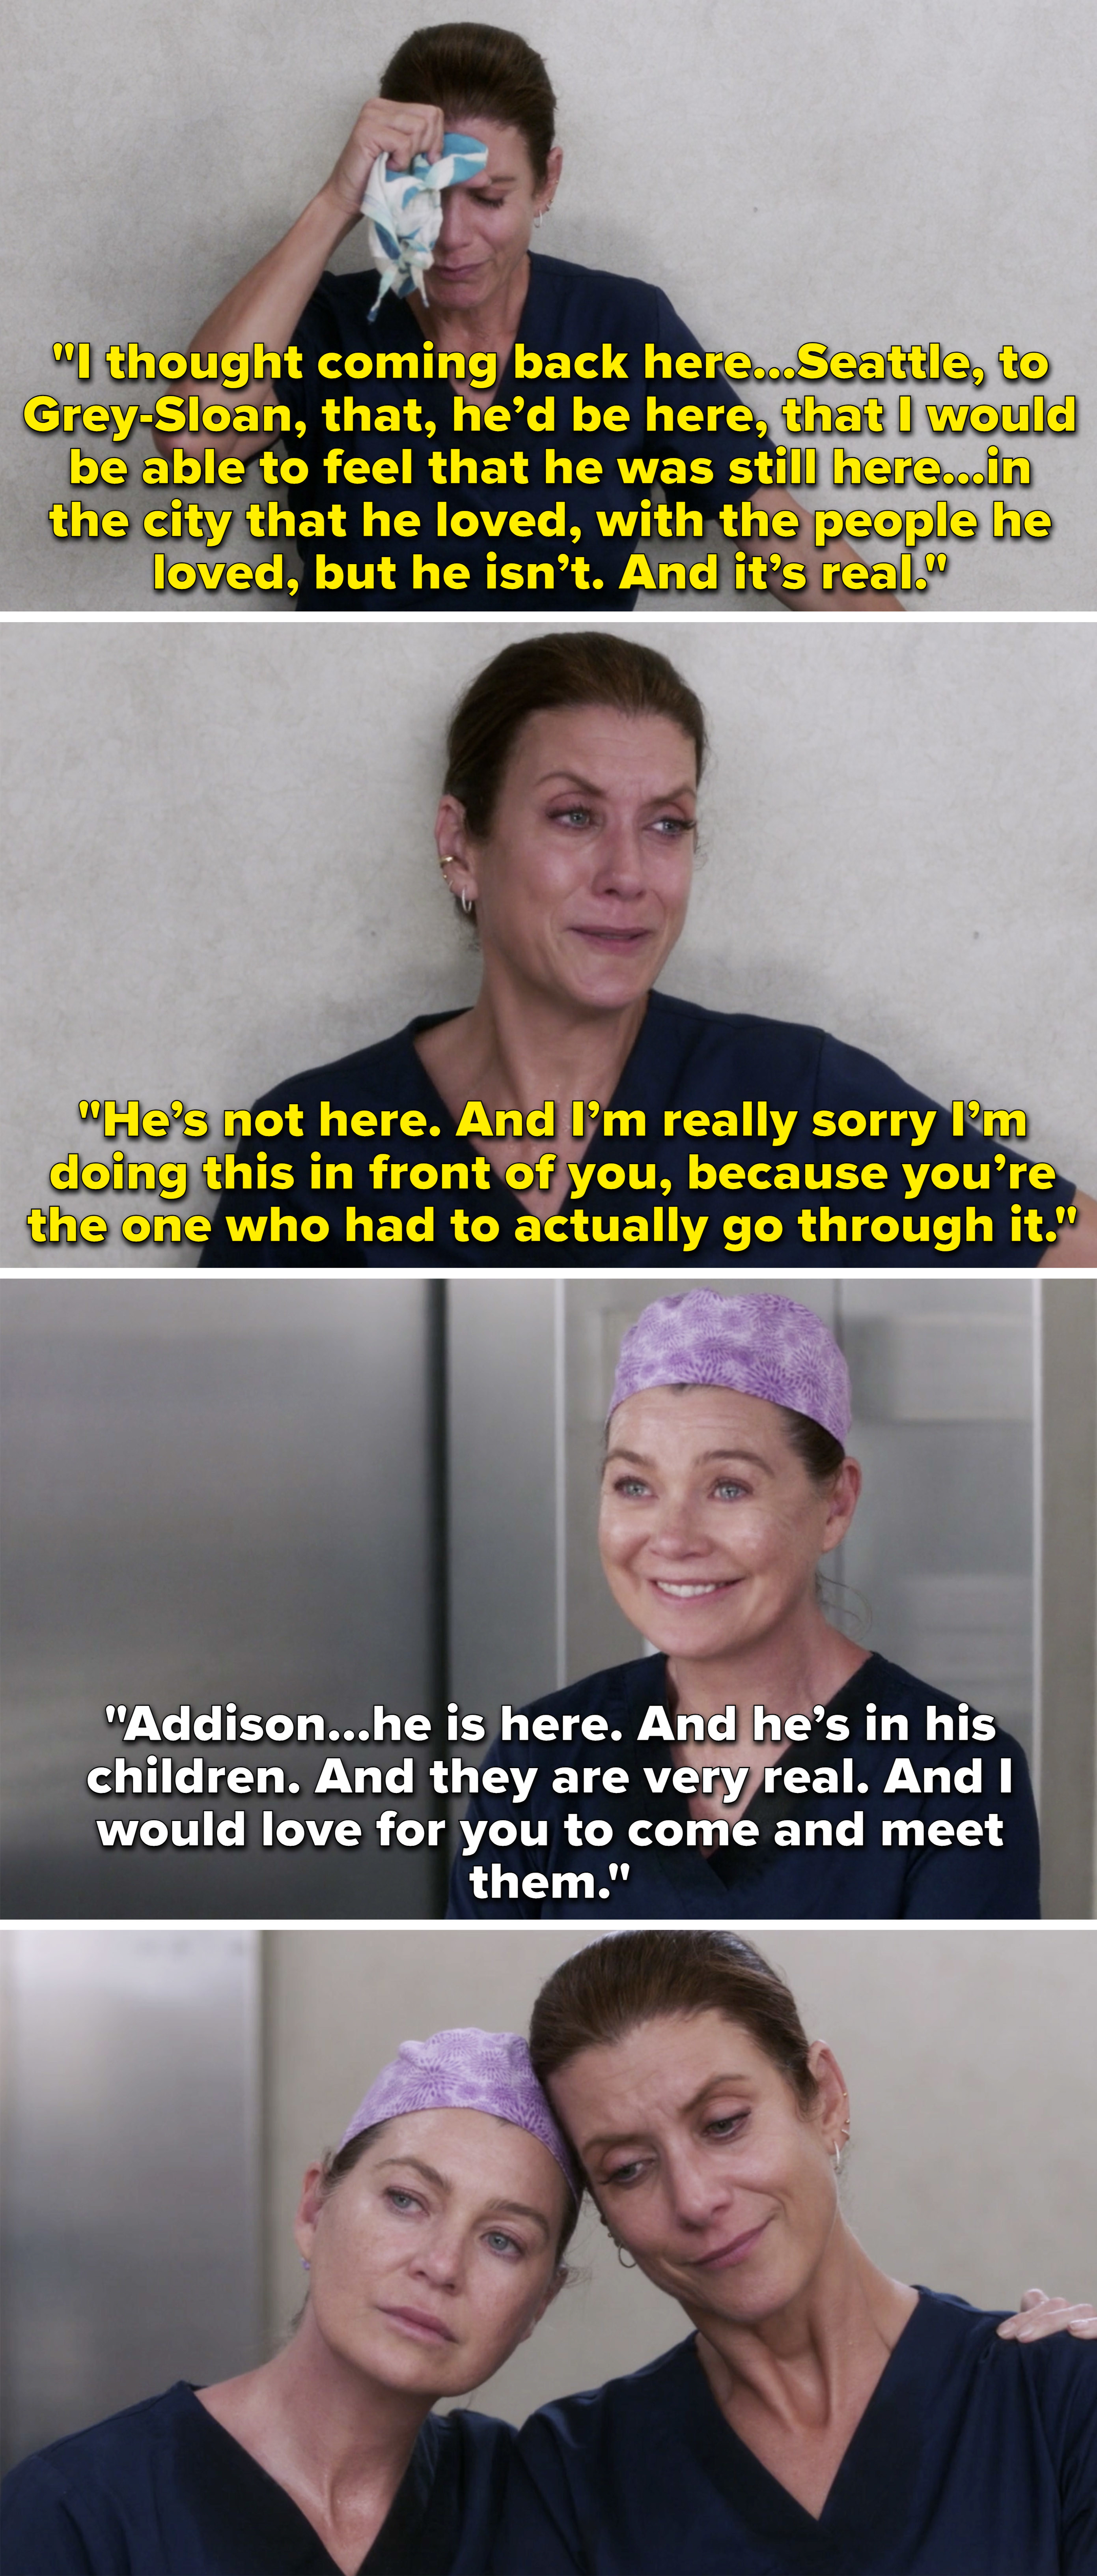 艾迪生哭在电梯德里克,说她怎么感觉回到西雅图就像选# x27; s还活着,那么Meredith邀请她来满足他们的孩子